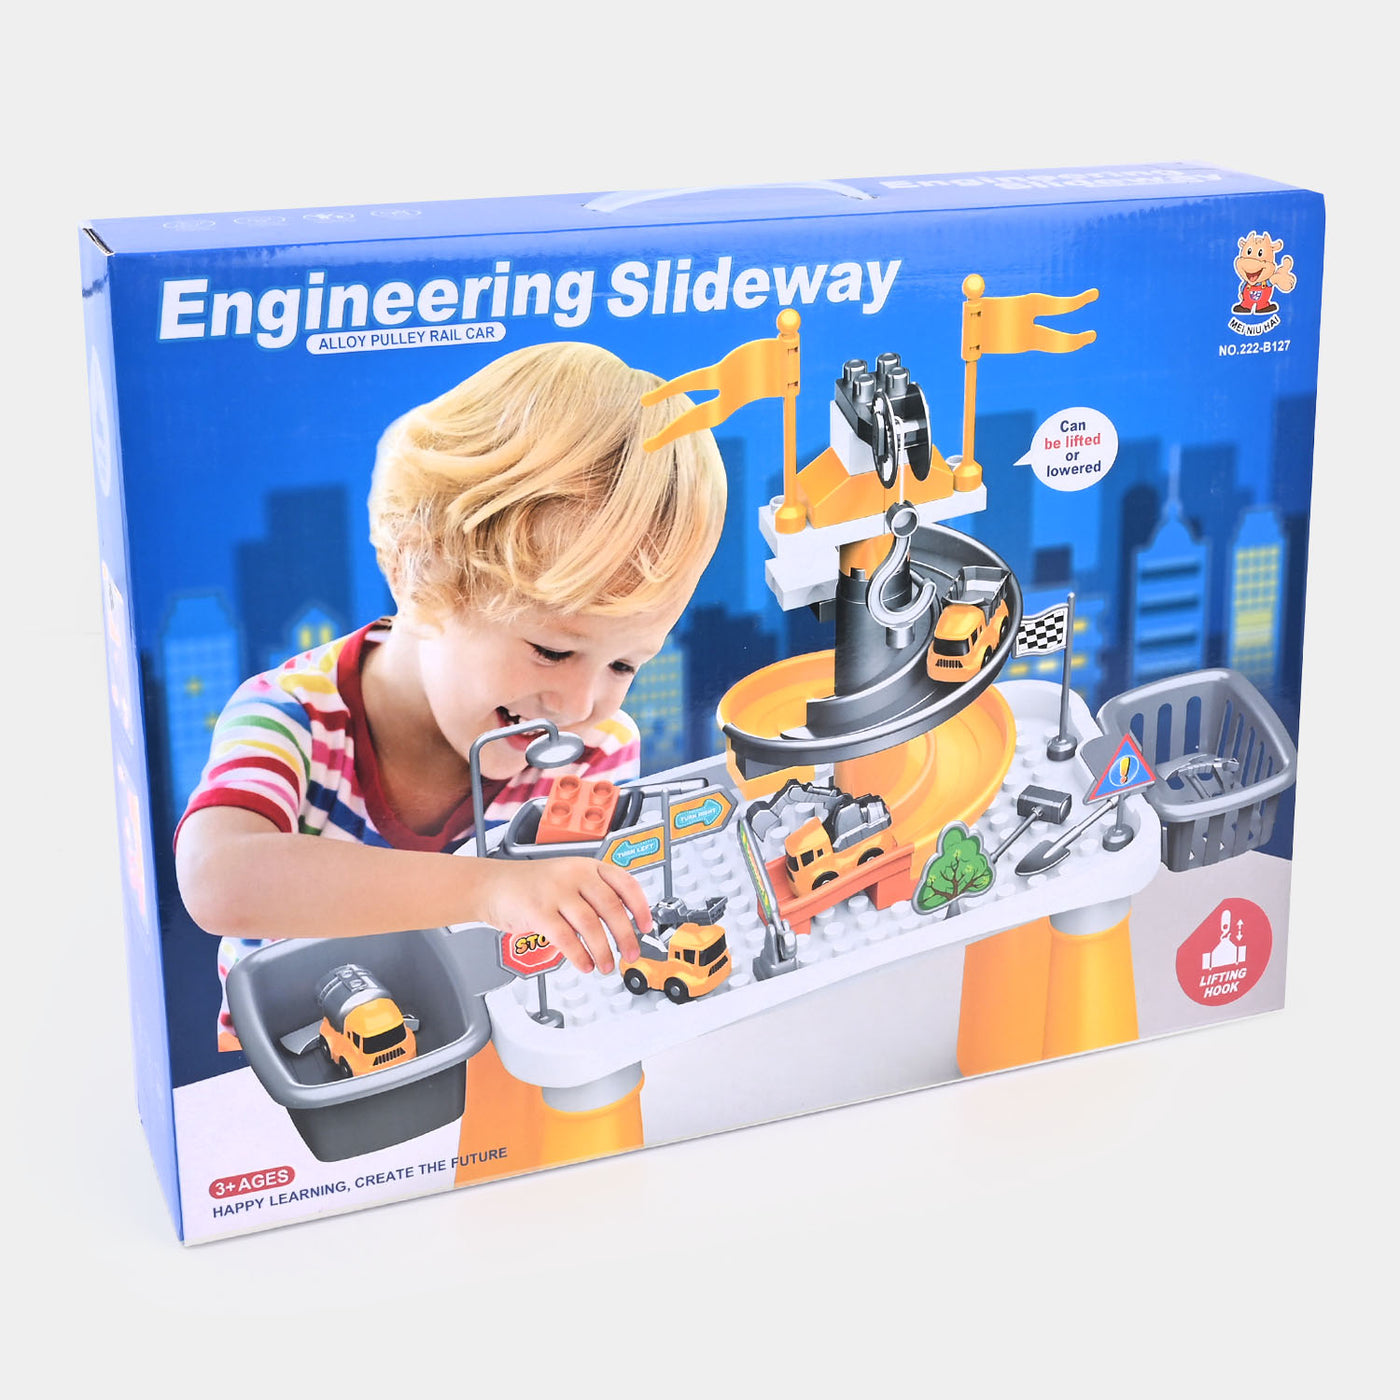 Engineering Slideway Blocks Table For Kids